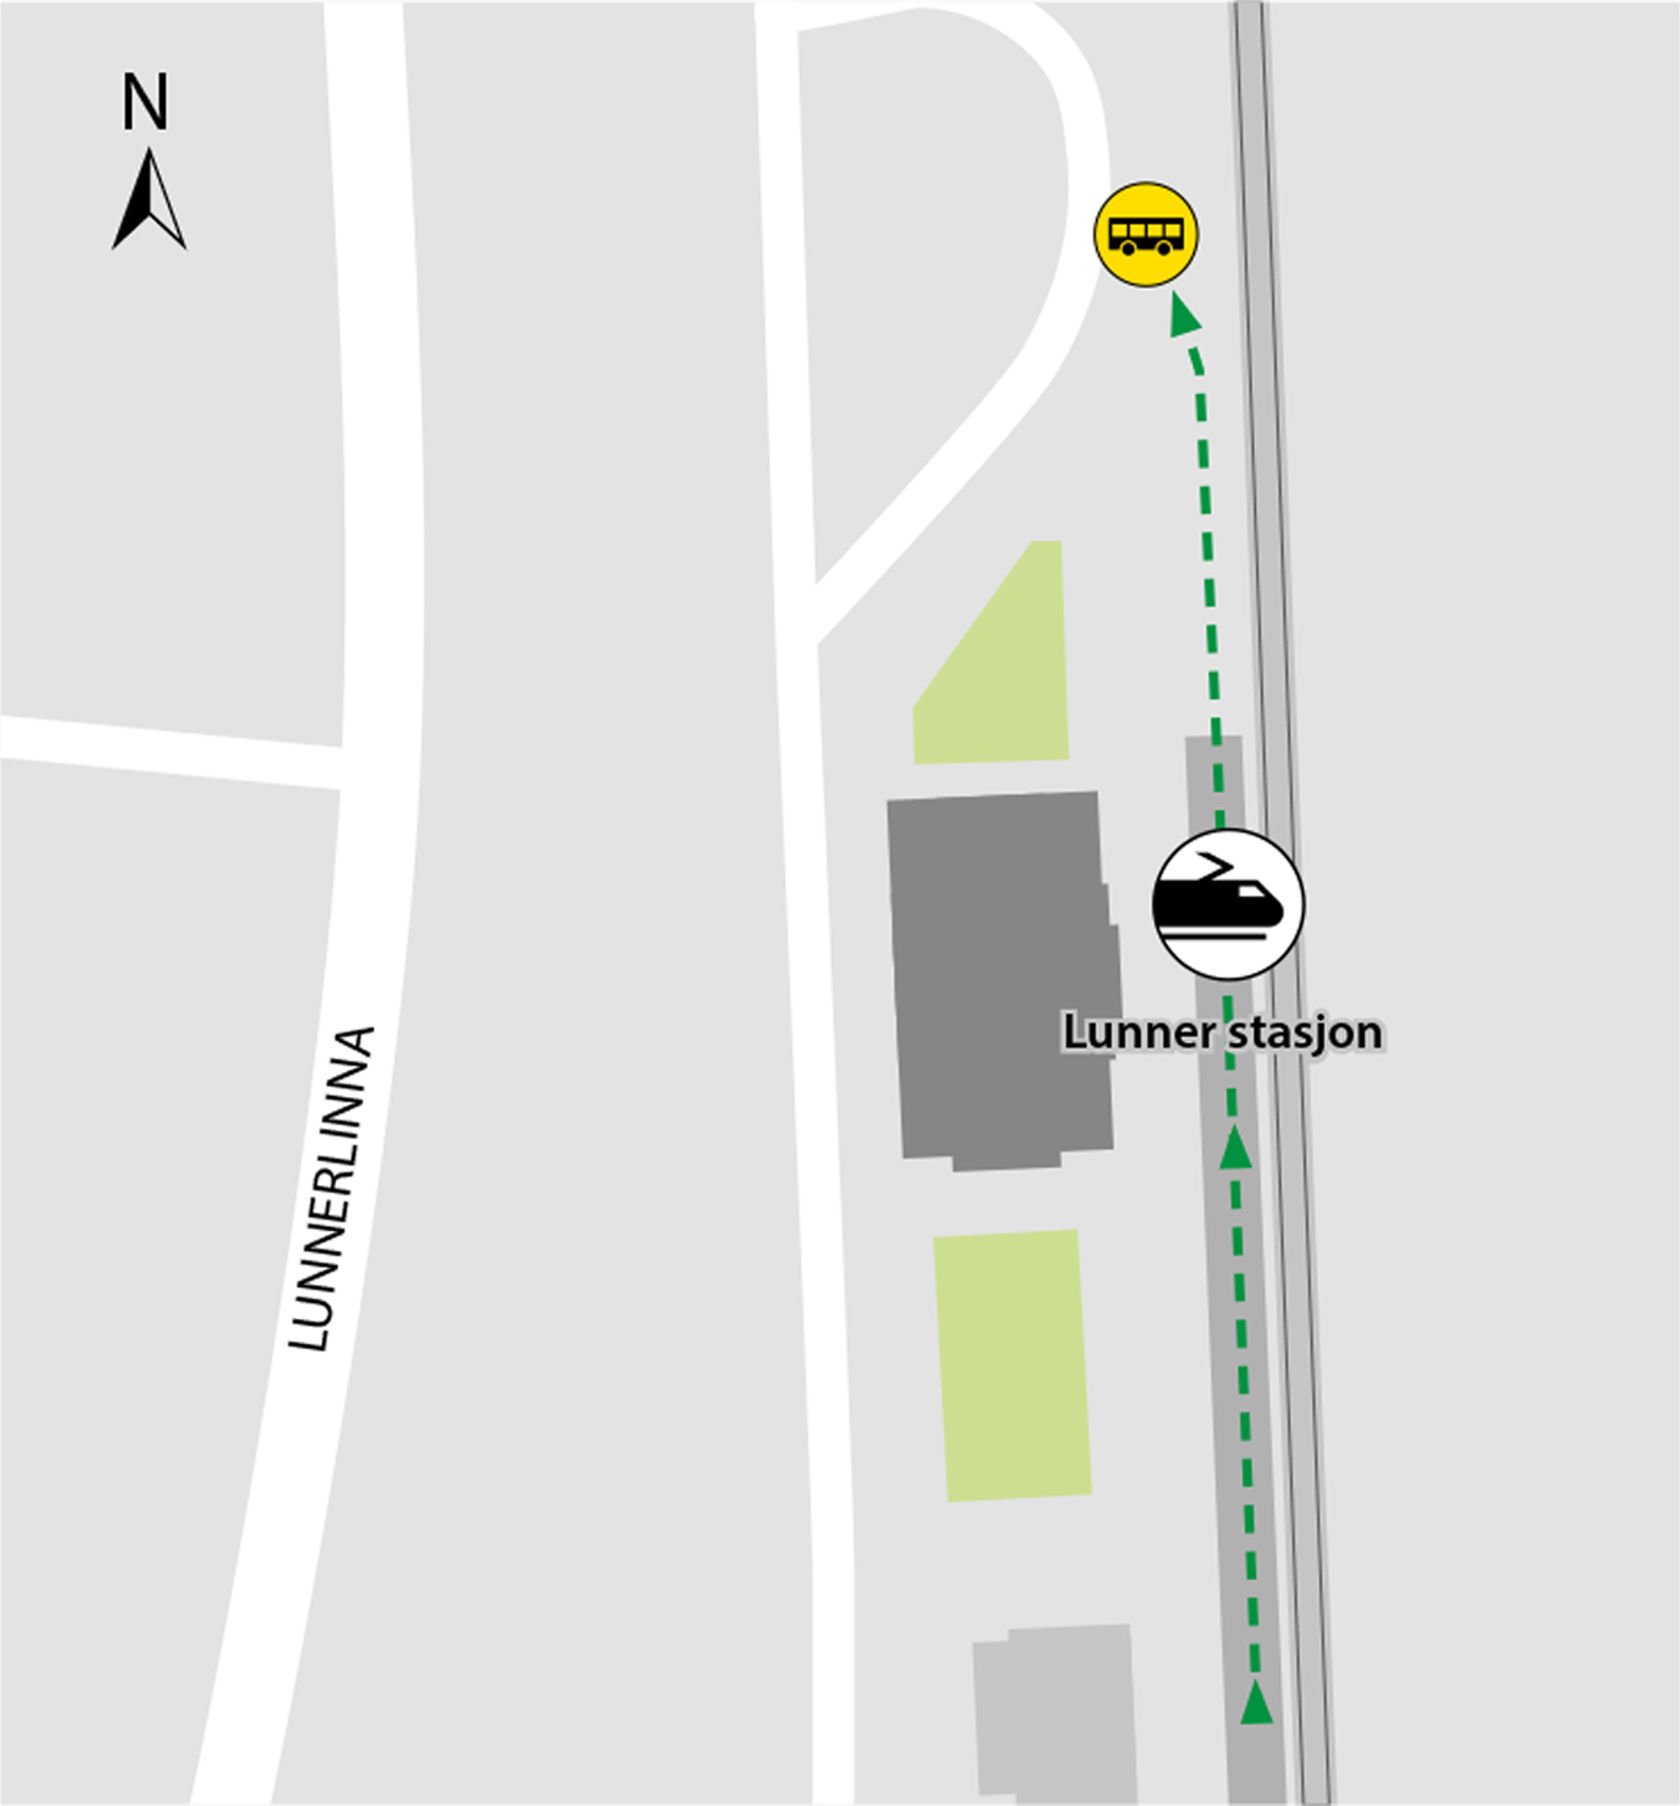 Kartet viser at bussene kjører fra bussholdeplassen Lunner stasjon. 